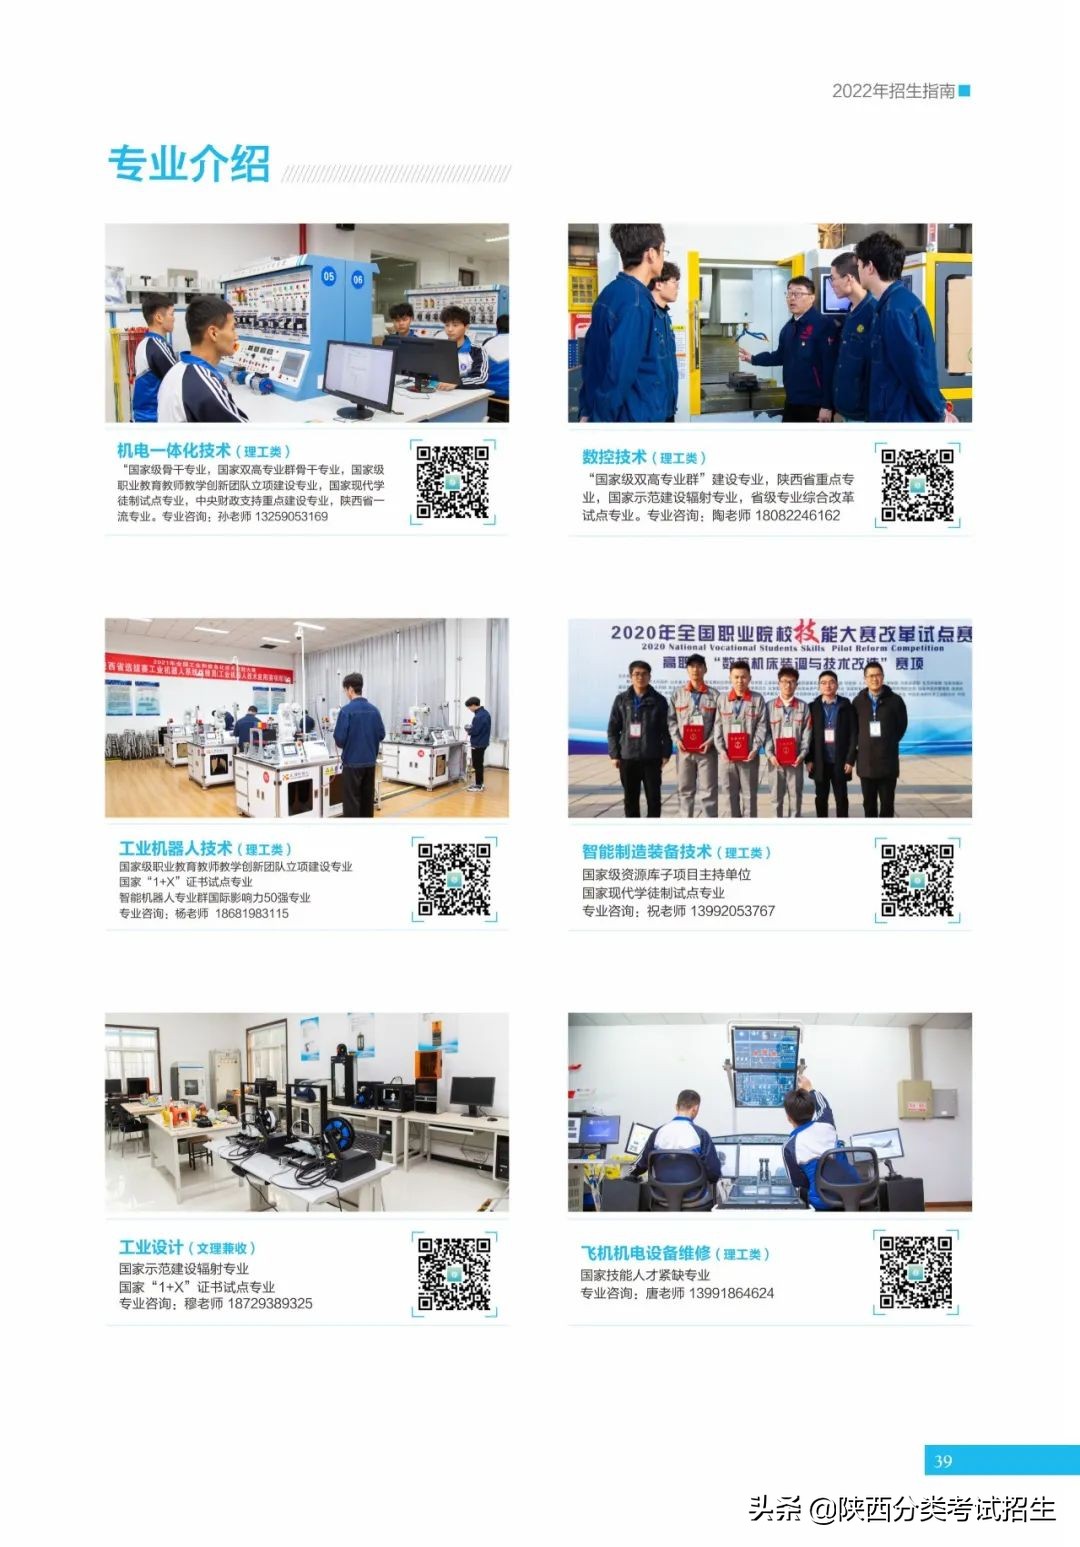 「招生简章」陕西工业职业技术学院2022年分类考试招生简章